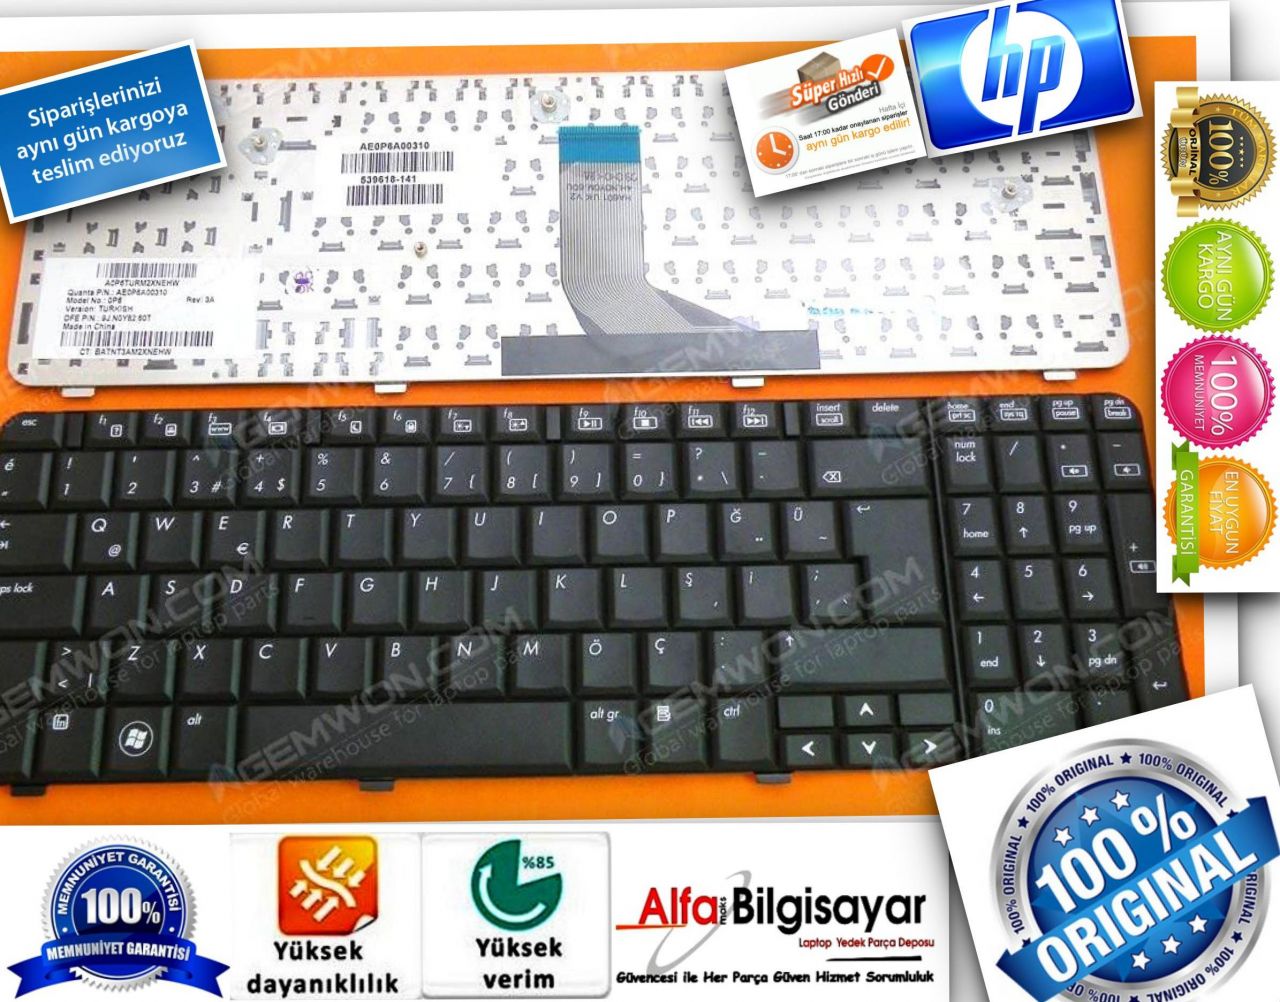 HP Compaq CQ70 G70 Klavye Keyboard Tuş Takımı